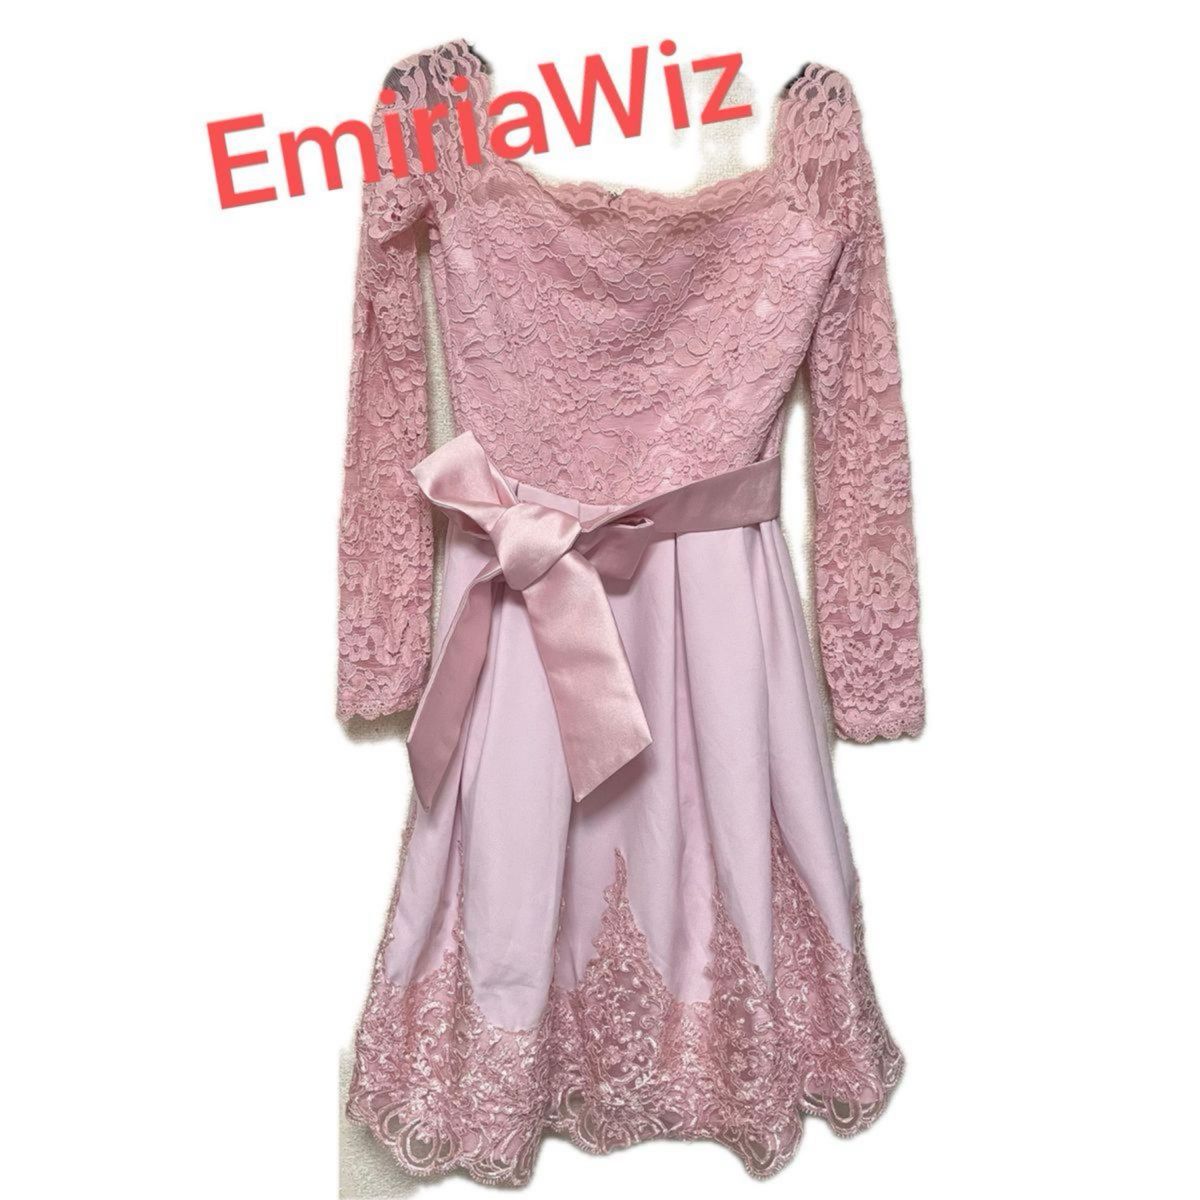 EmiriaWiz エミリアウィズ ドレス ワンピース カラードレス 長袖